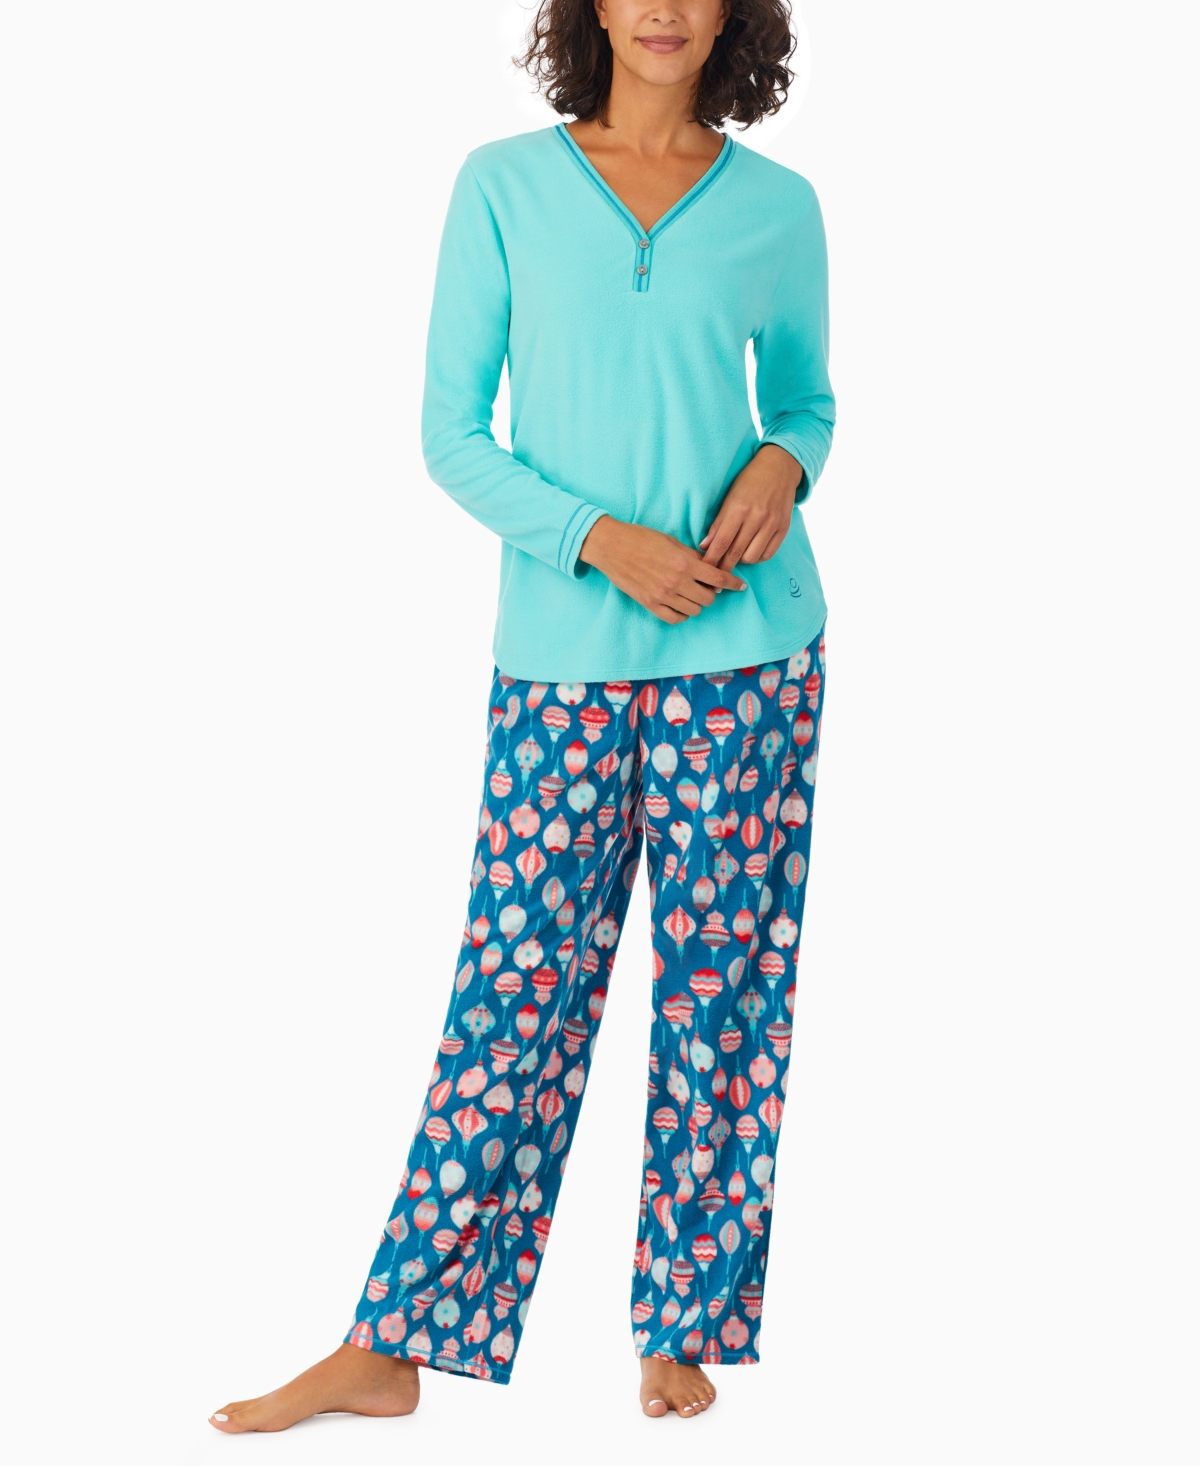 Cuddl Duds Women's 2-pc. Fleece Long-sleeve Printed Pajamas Set In Teal  Print